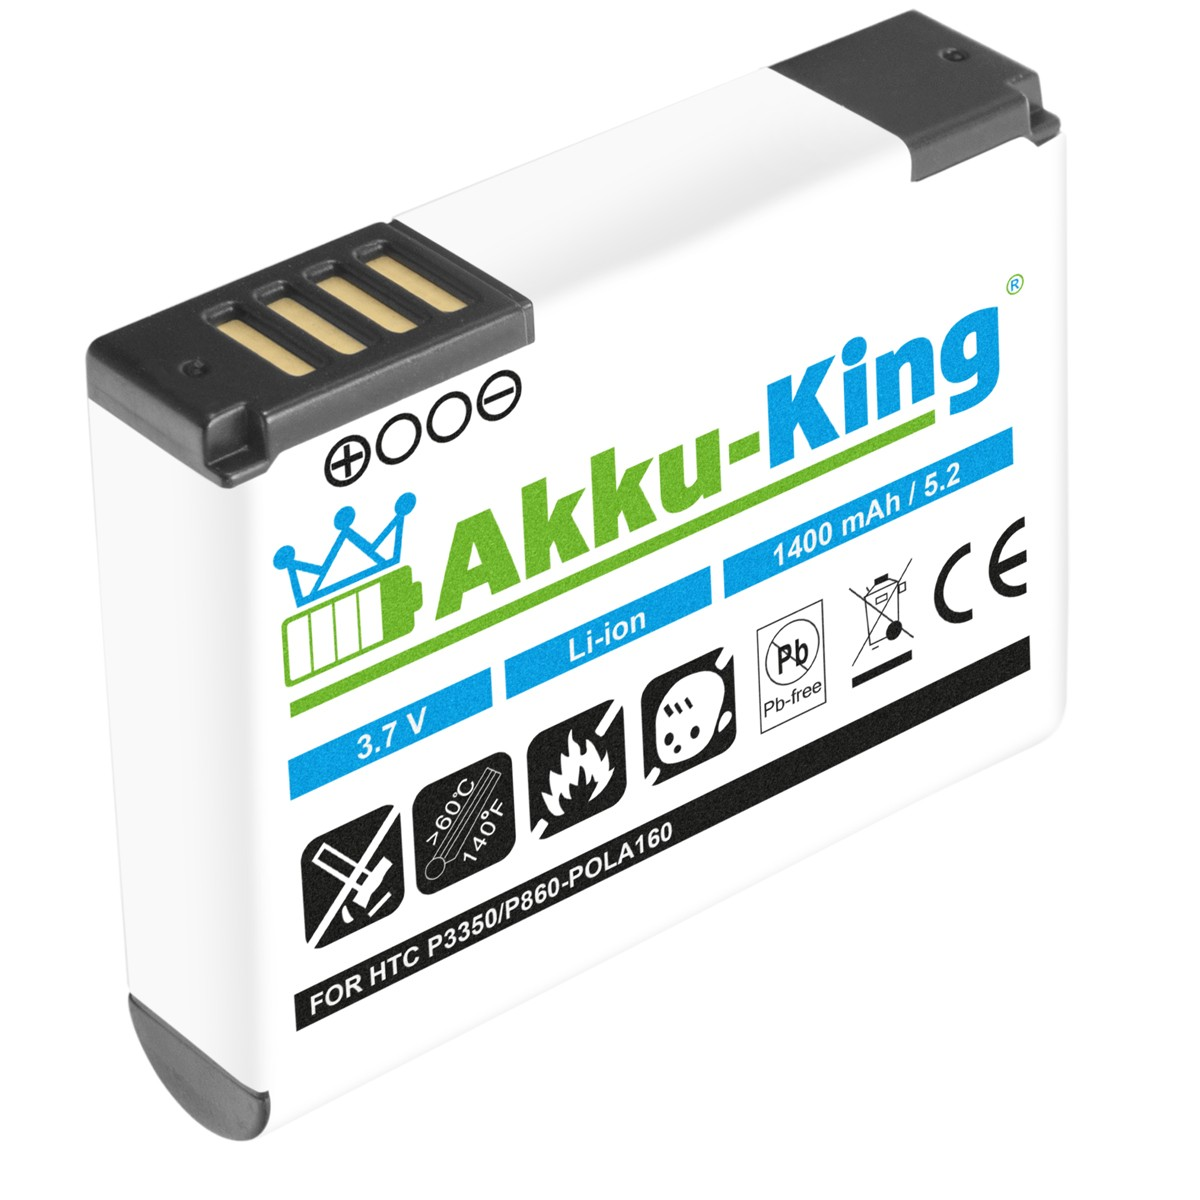 AKKU-KING Akku kompatibel mit Volt, Handy-Akku, HTC 3.7 1400mAh Li-Ion POLA160